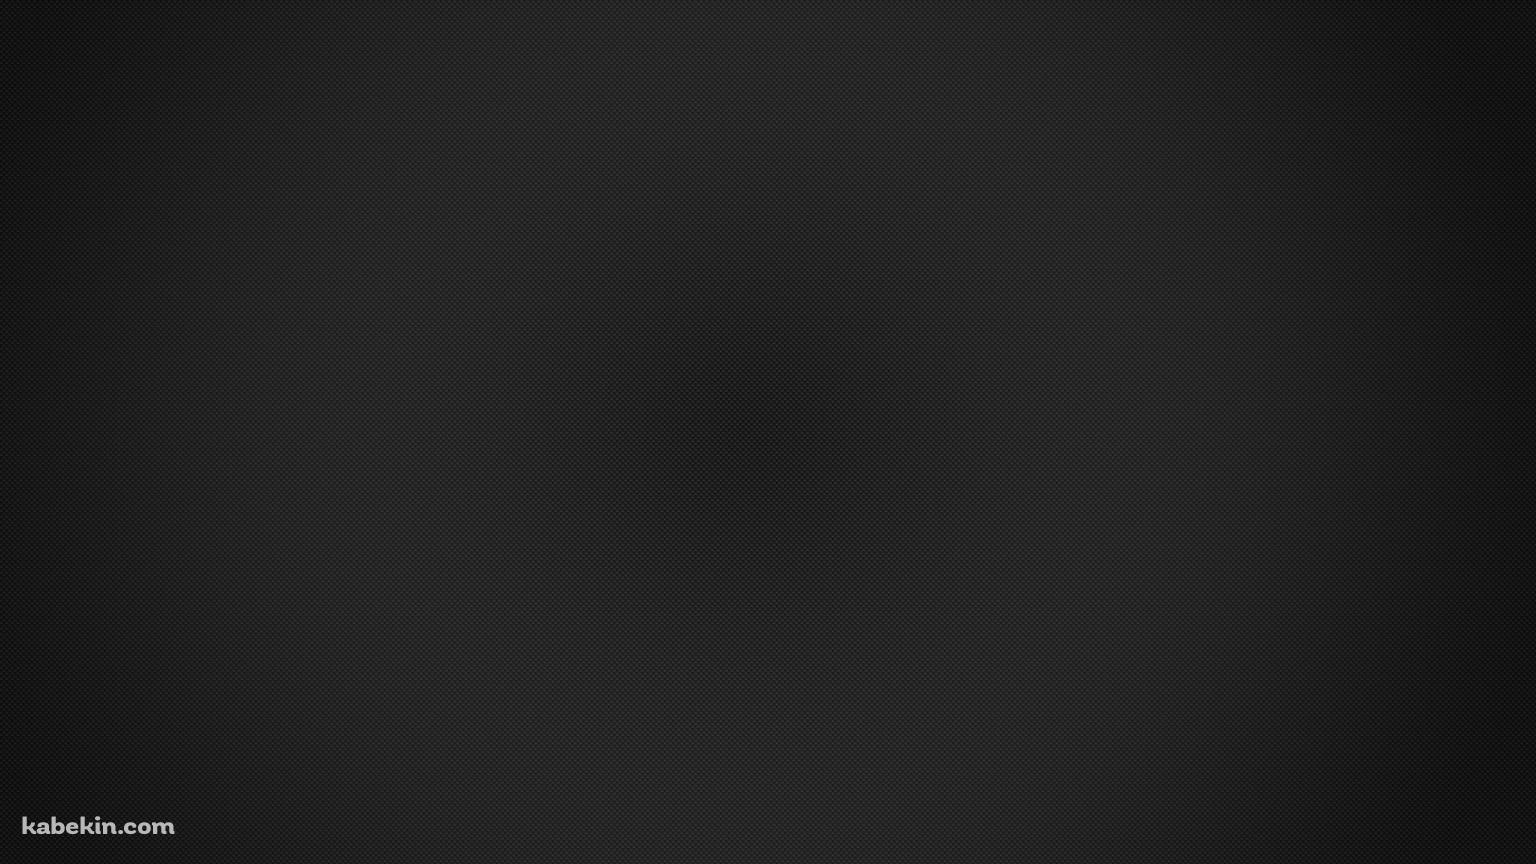 シンプルな黒のドットの集合体の壁紙(1536px x 864px) 高画質 PC・デスクトップ用